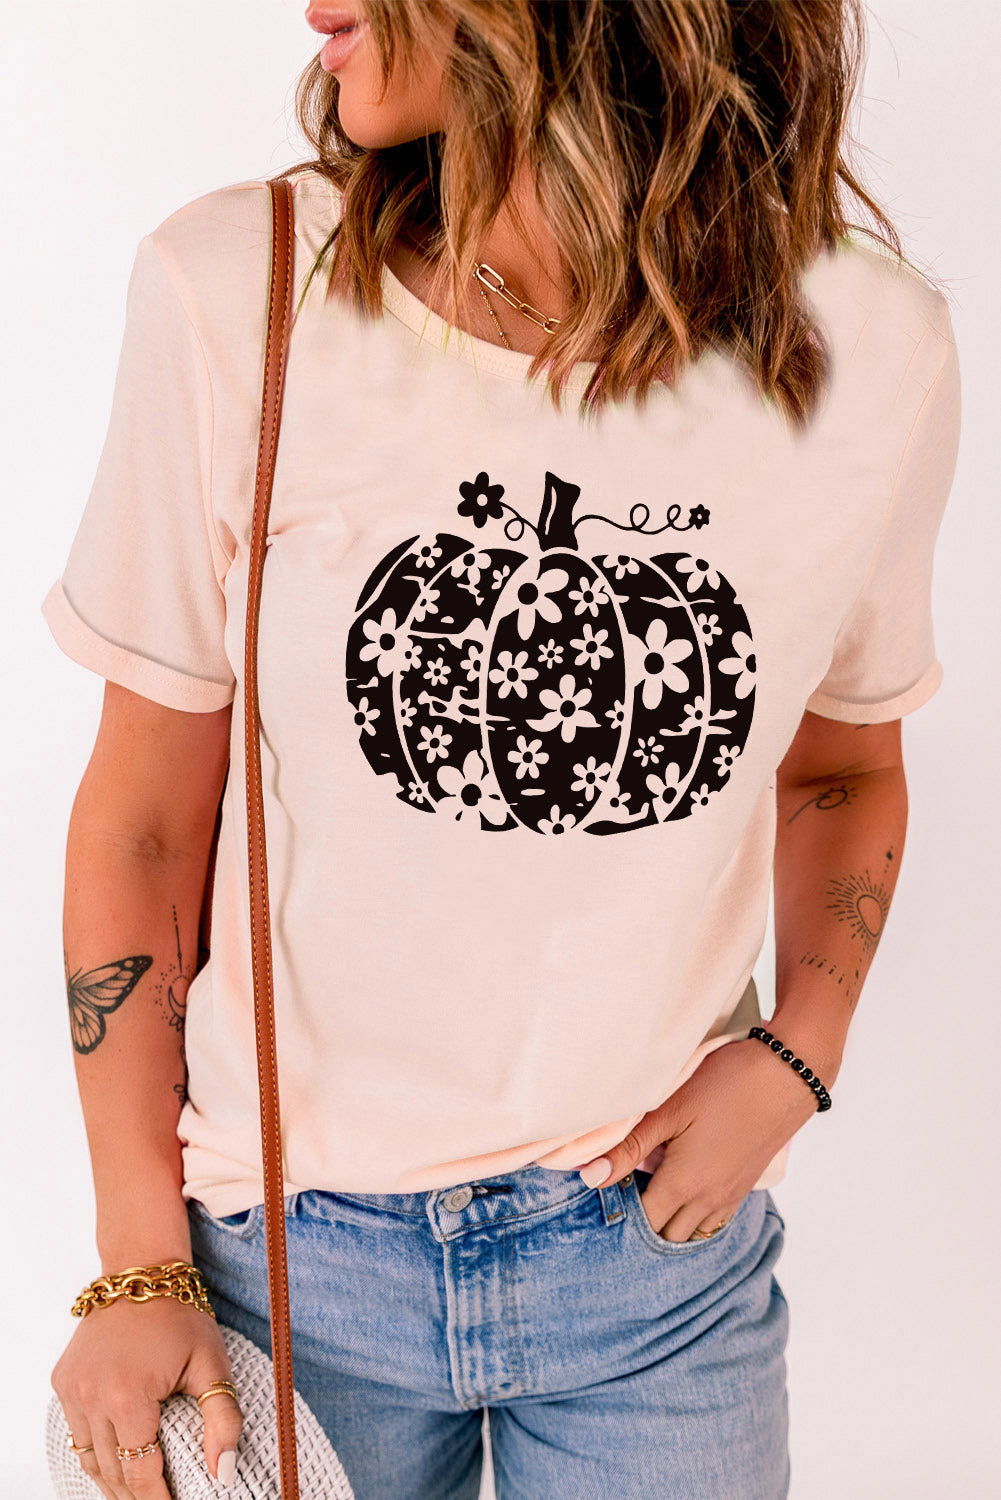 Camiseta con gráfico floral de calabaza